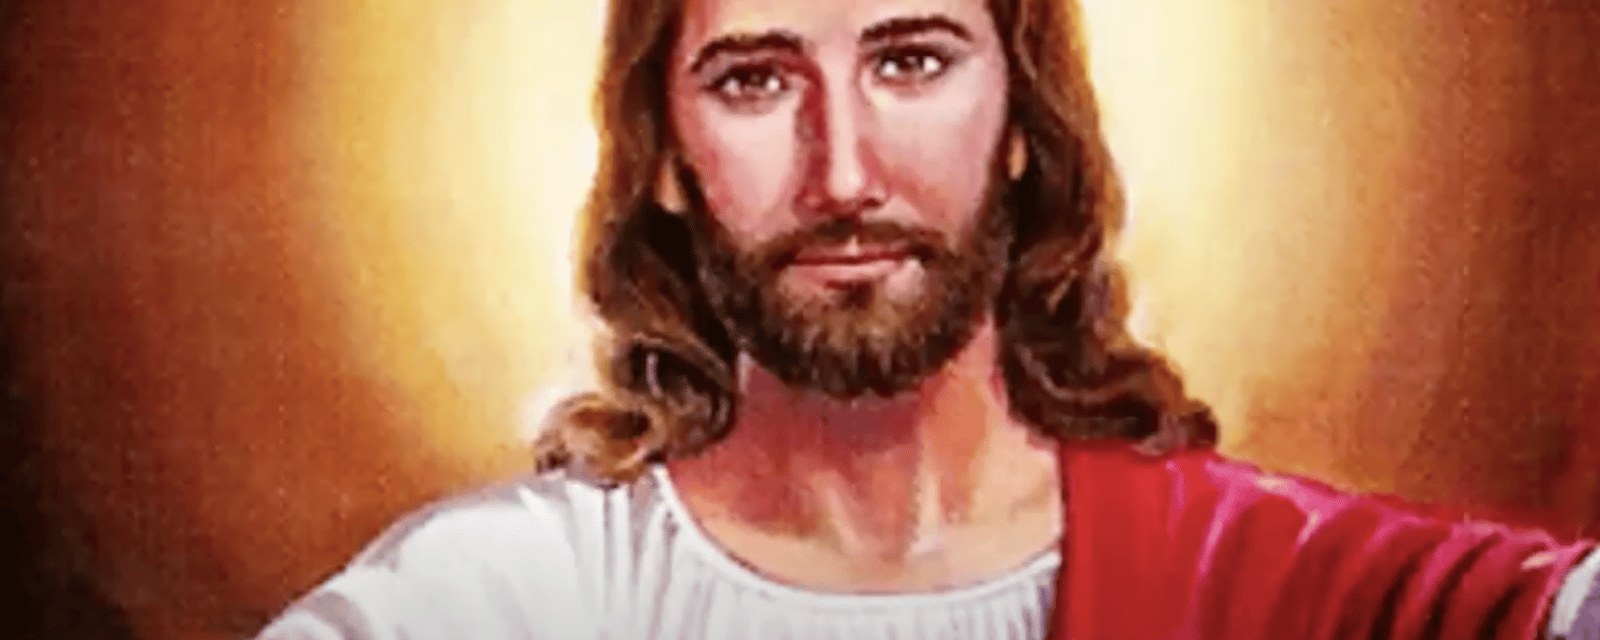 Des experts médico-légaux ont révélé la véritable apparence de Jésus